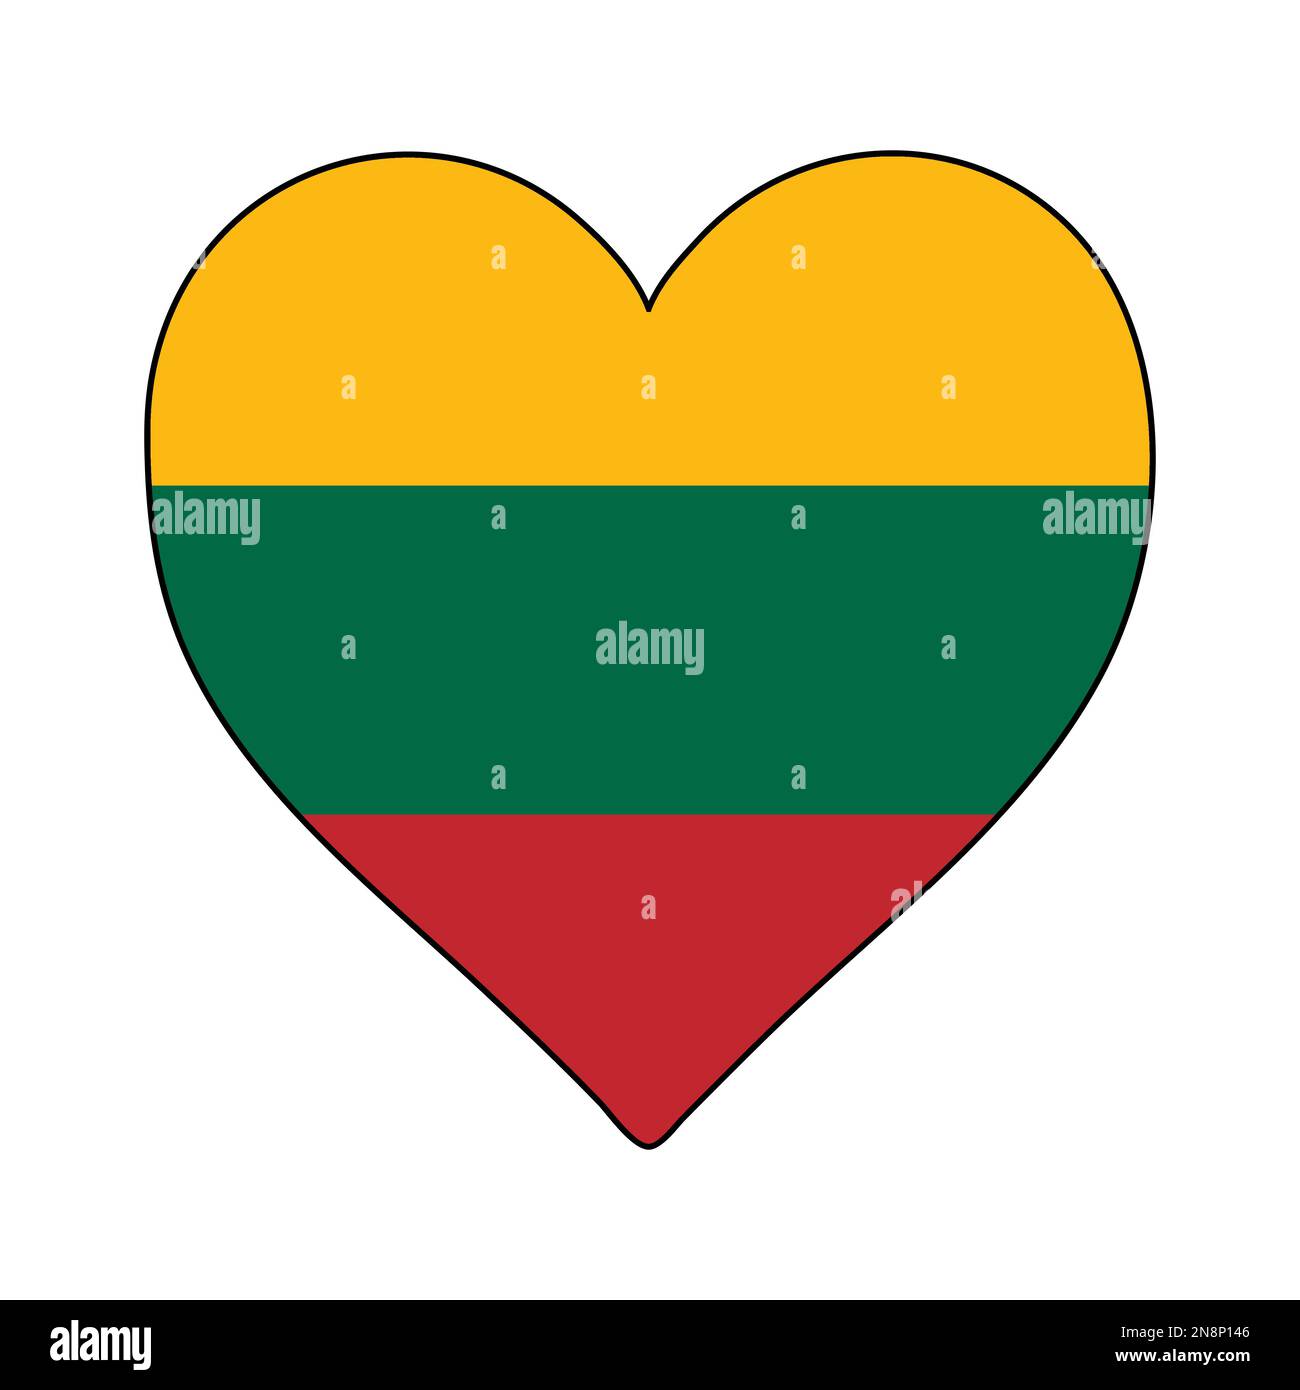 Lituania Heart Shape Flag. Amate la Lituania. Visita in Lituania. Nord Europa. Europa. Unione europea. Disegno grafico dell'illustrazione vettoriale. Illustrazione Vettoriale